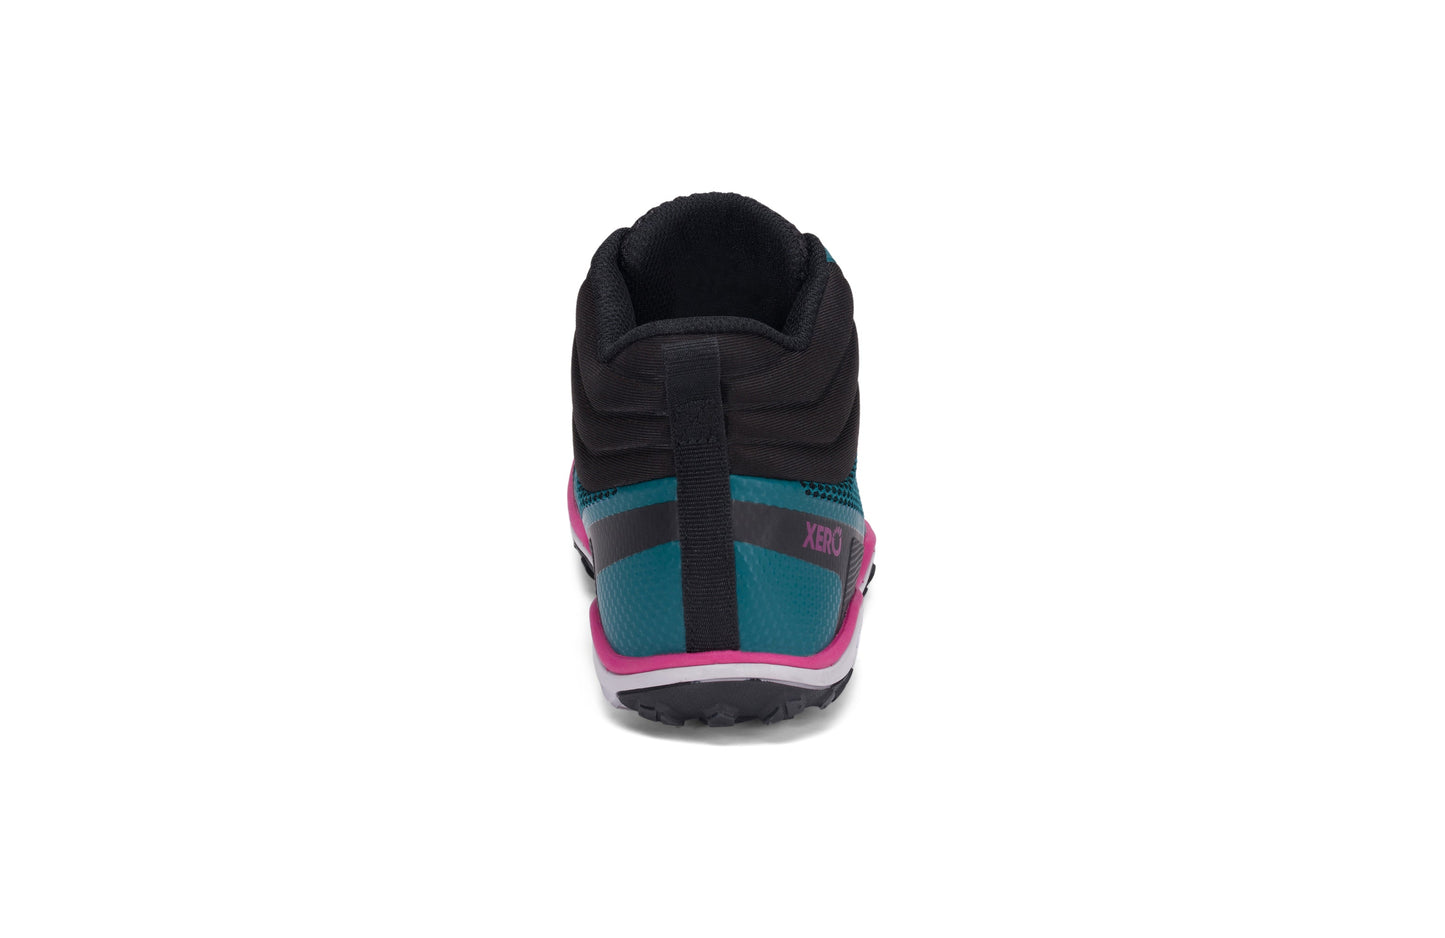 Xero Shoes Scrambler Mid Womens barfods lette vandrestøvler til kvinder i farven deep lake / fuschia, bagfra